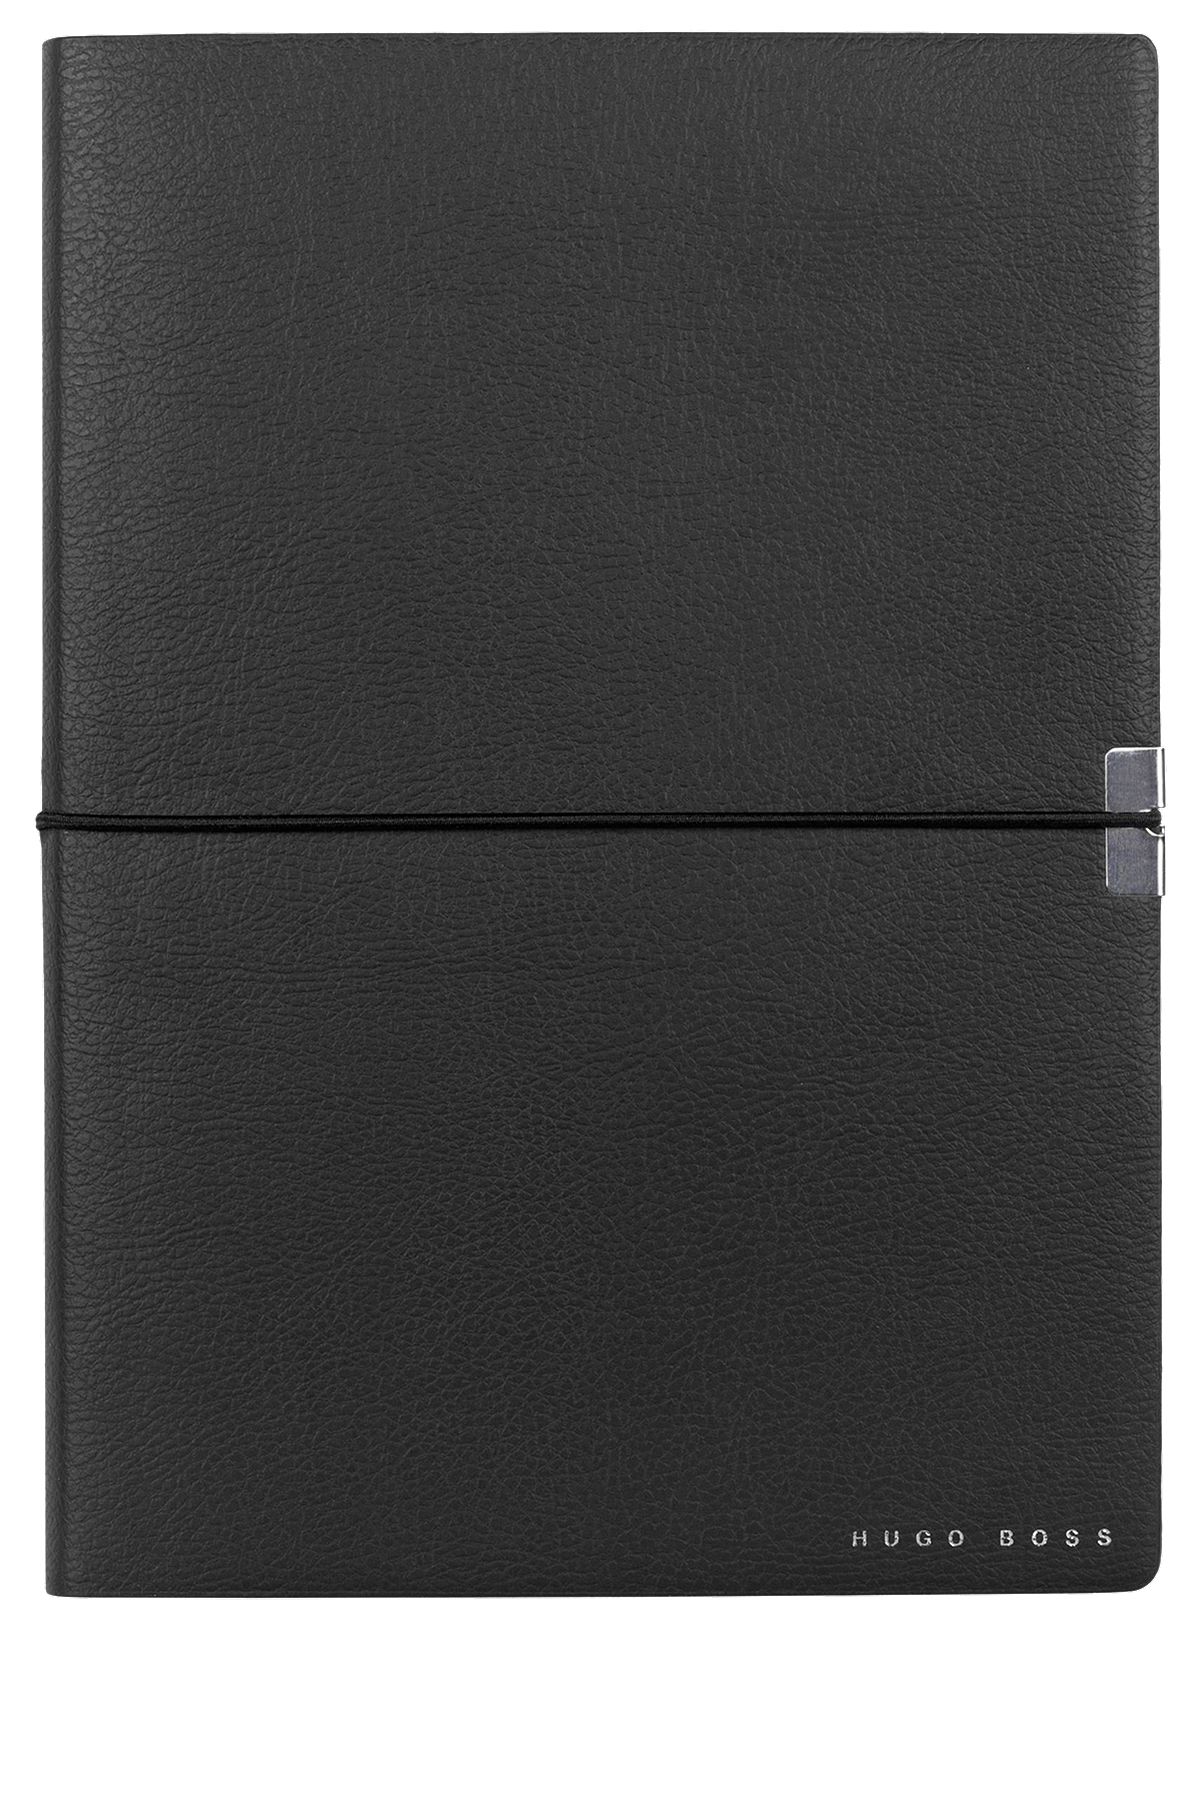 DIN-A5-Notizbuch aus schwarzem Kunstleder mit elastischem Band, Schwarz